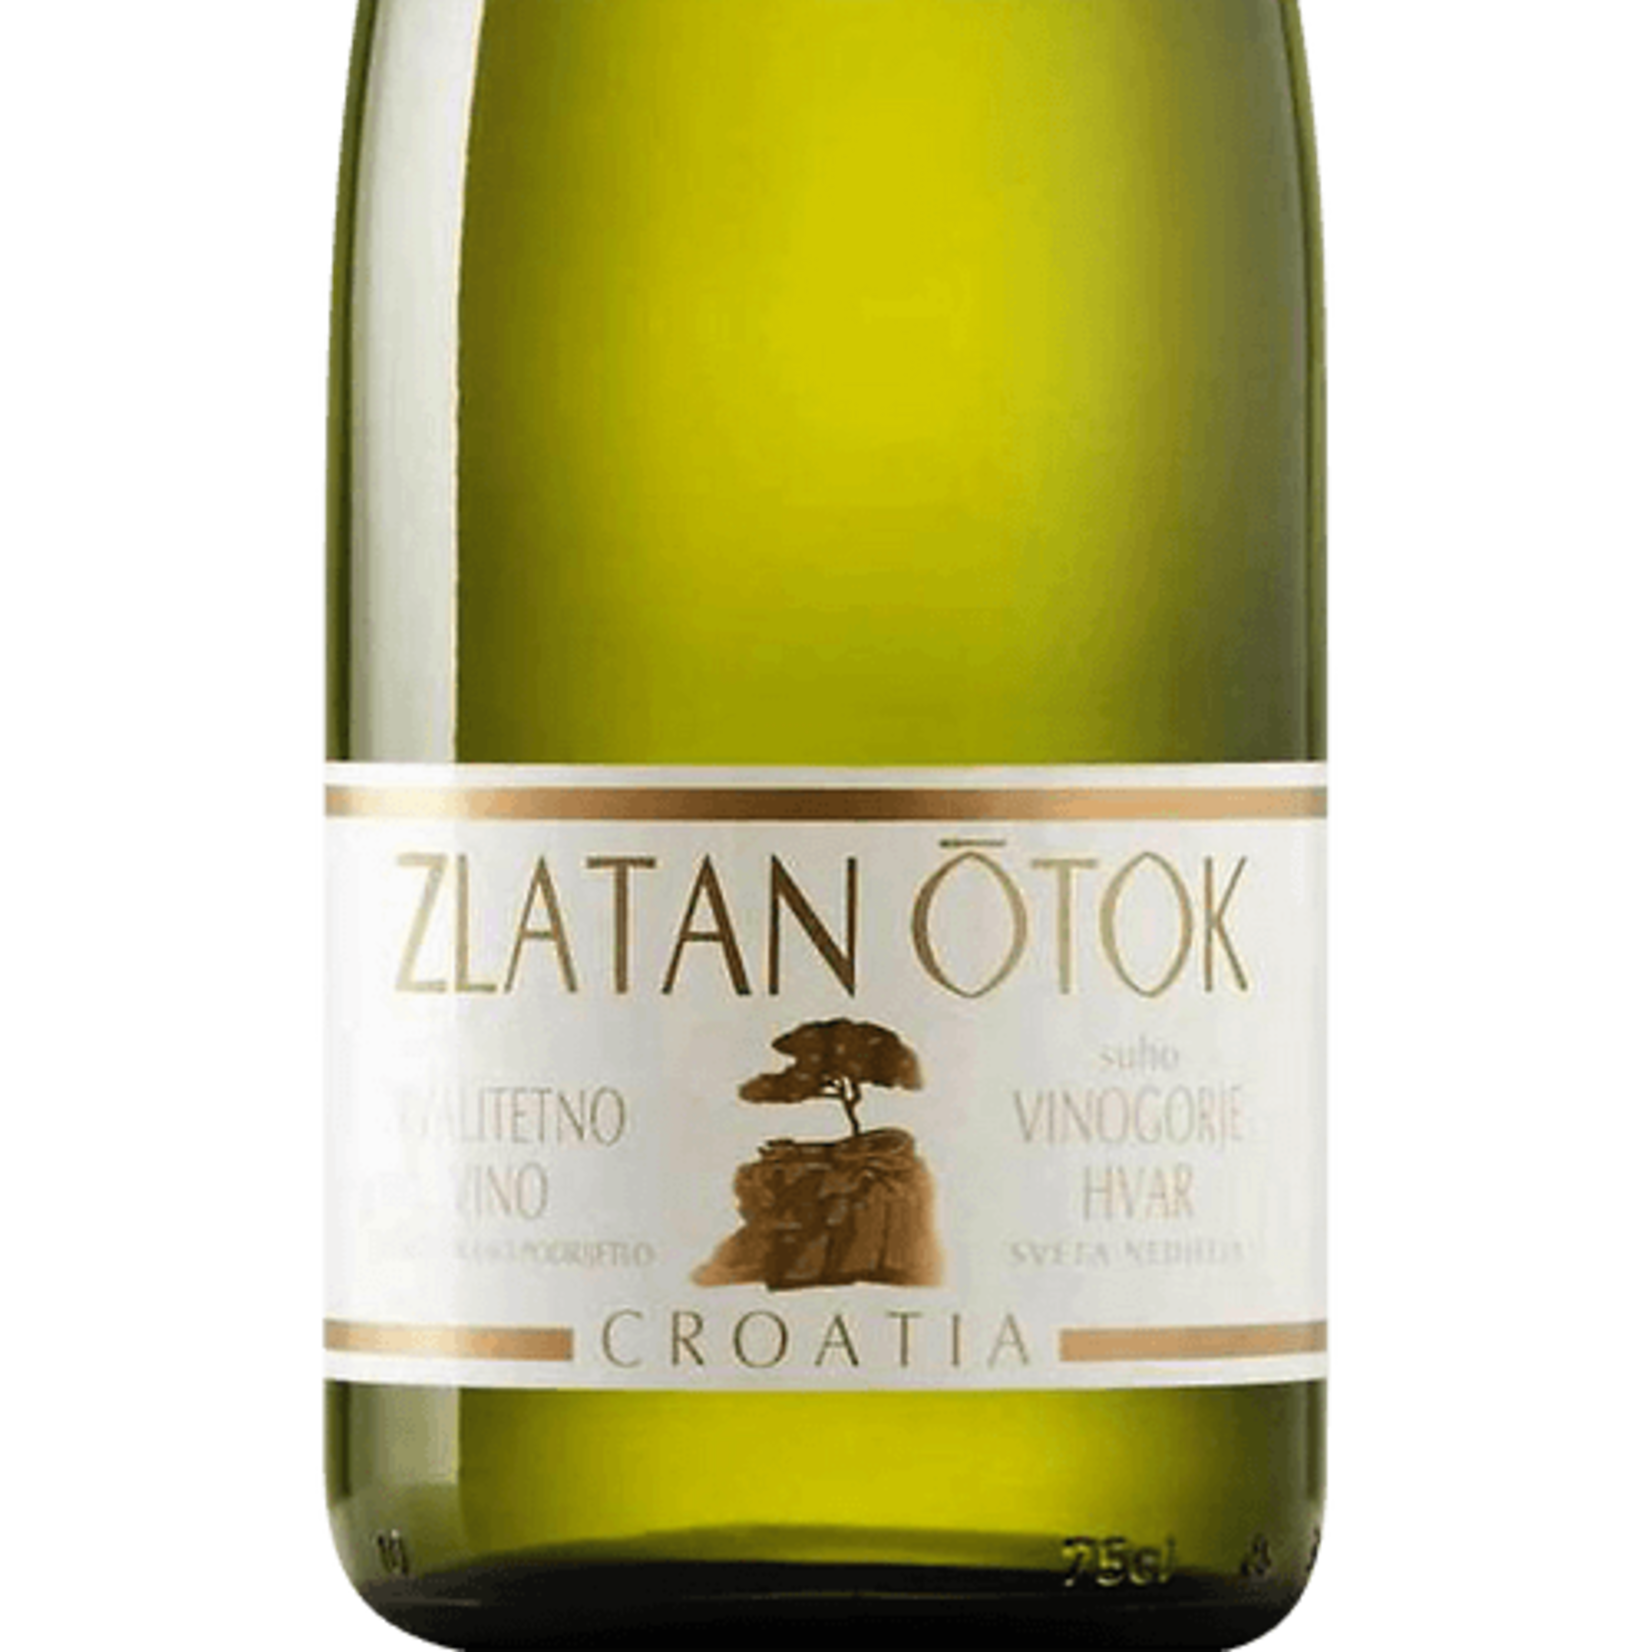 Zaltan Otok Winery Zlatan Otok Croatia